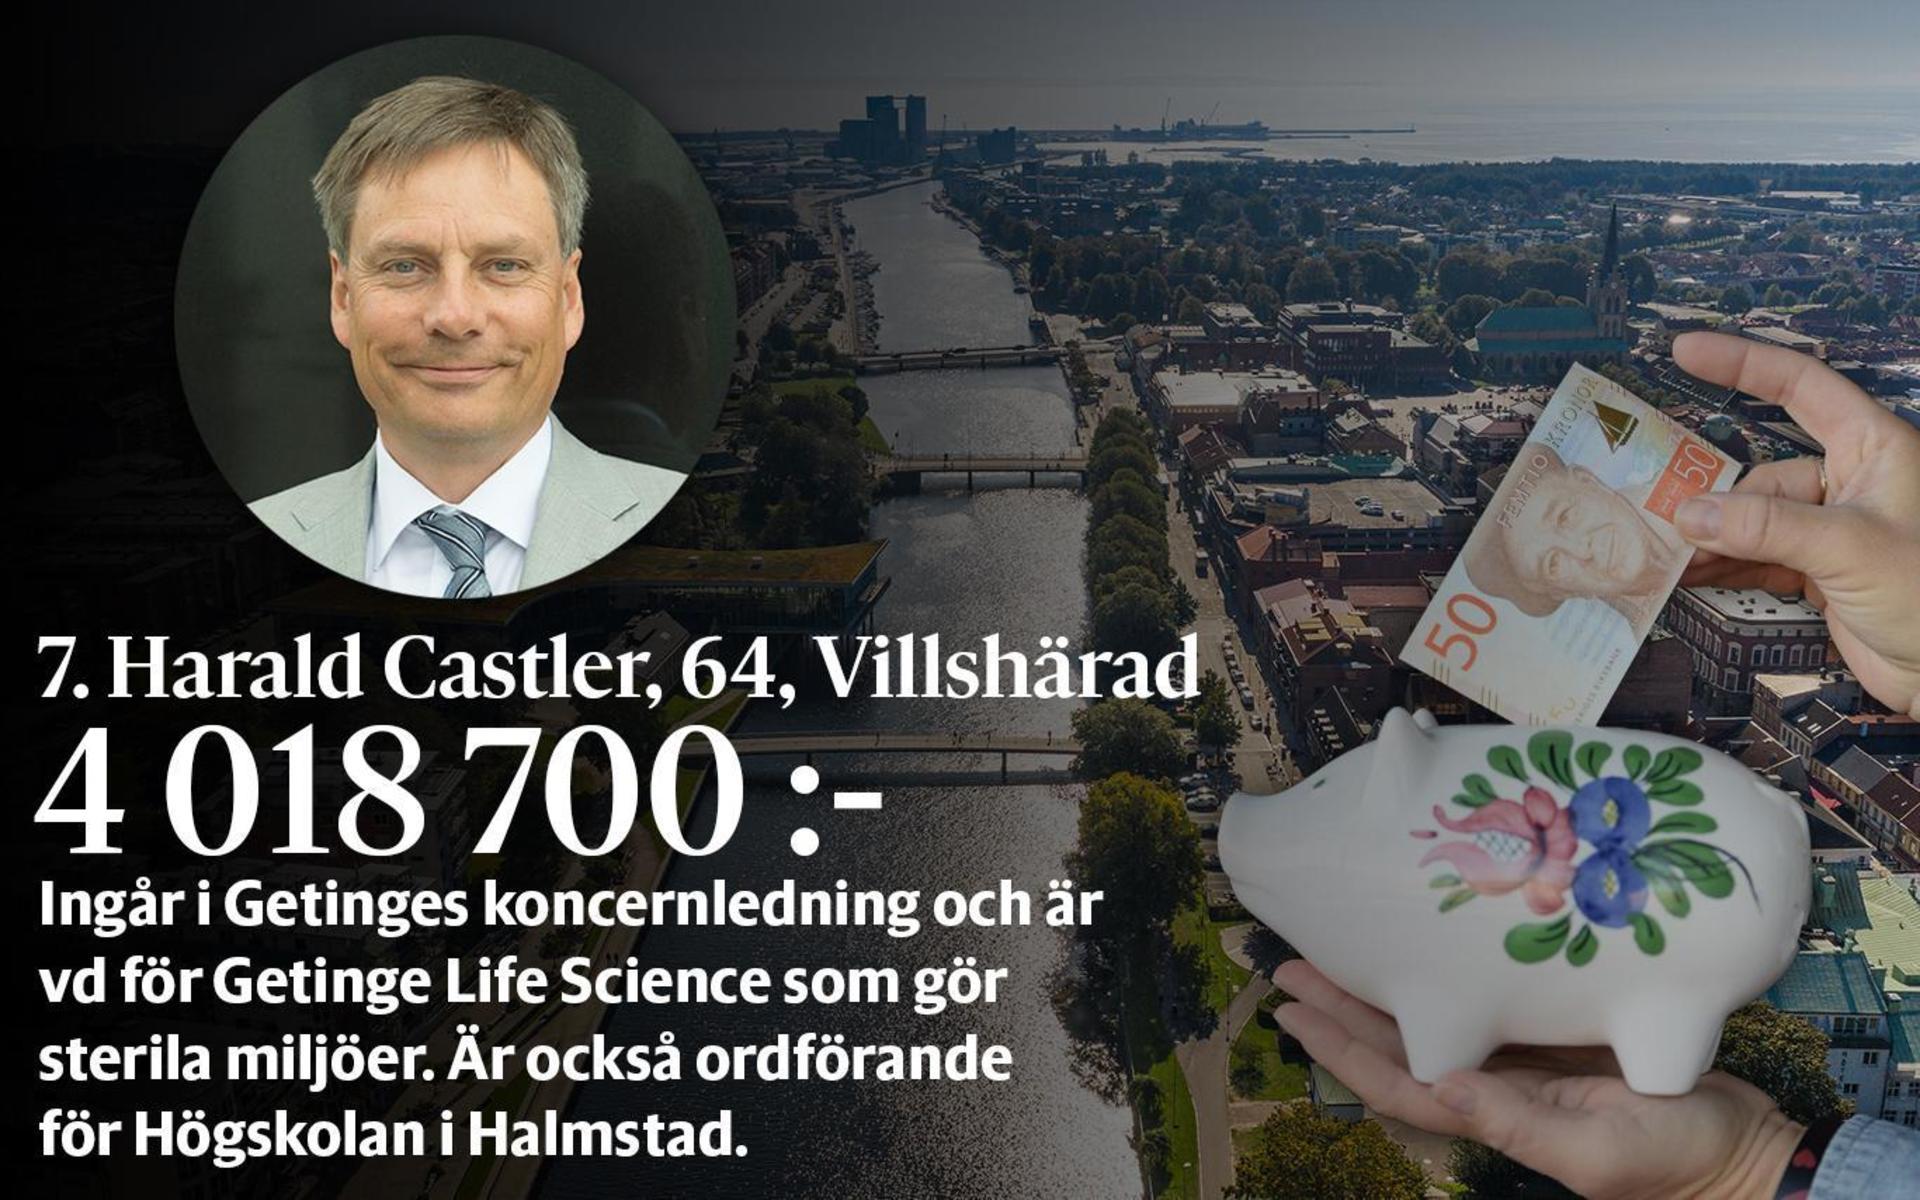 7. Harald Castler, fastställd förvärvsinkomst på 4 018 700 kronor placerar honom på plats 65 i den totala inkomstligan i Halmstad där inkomst av kapital också räknas med.